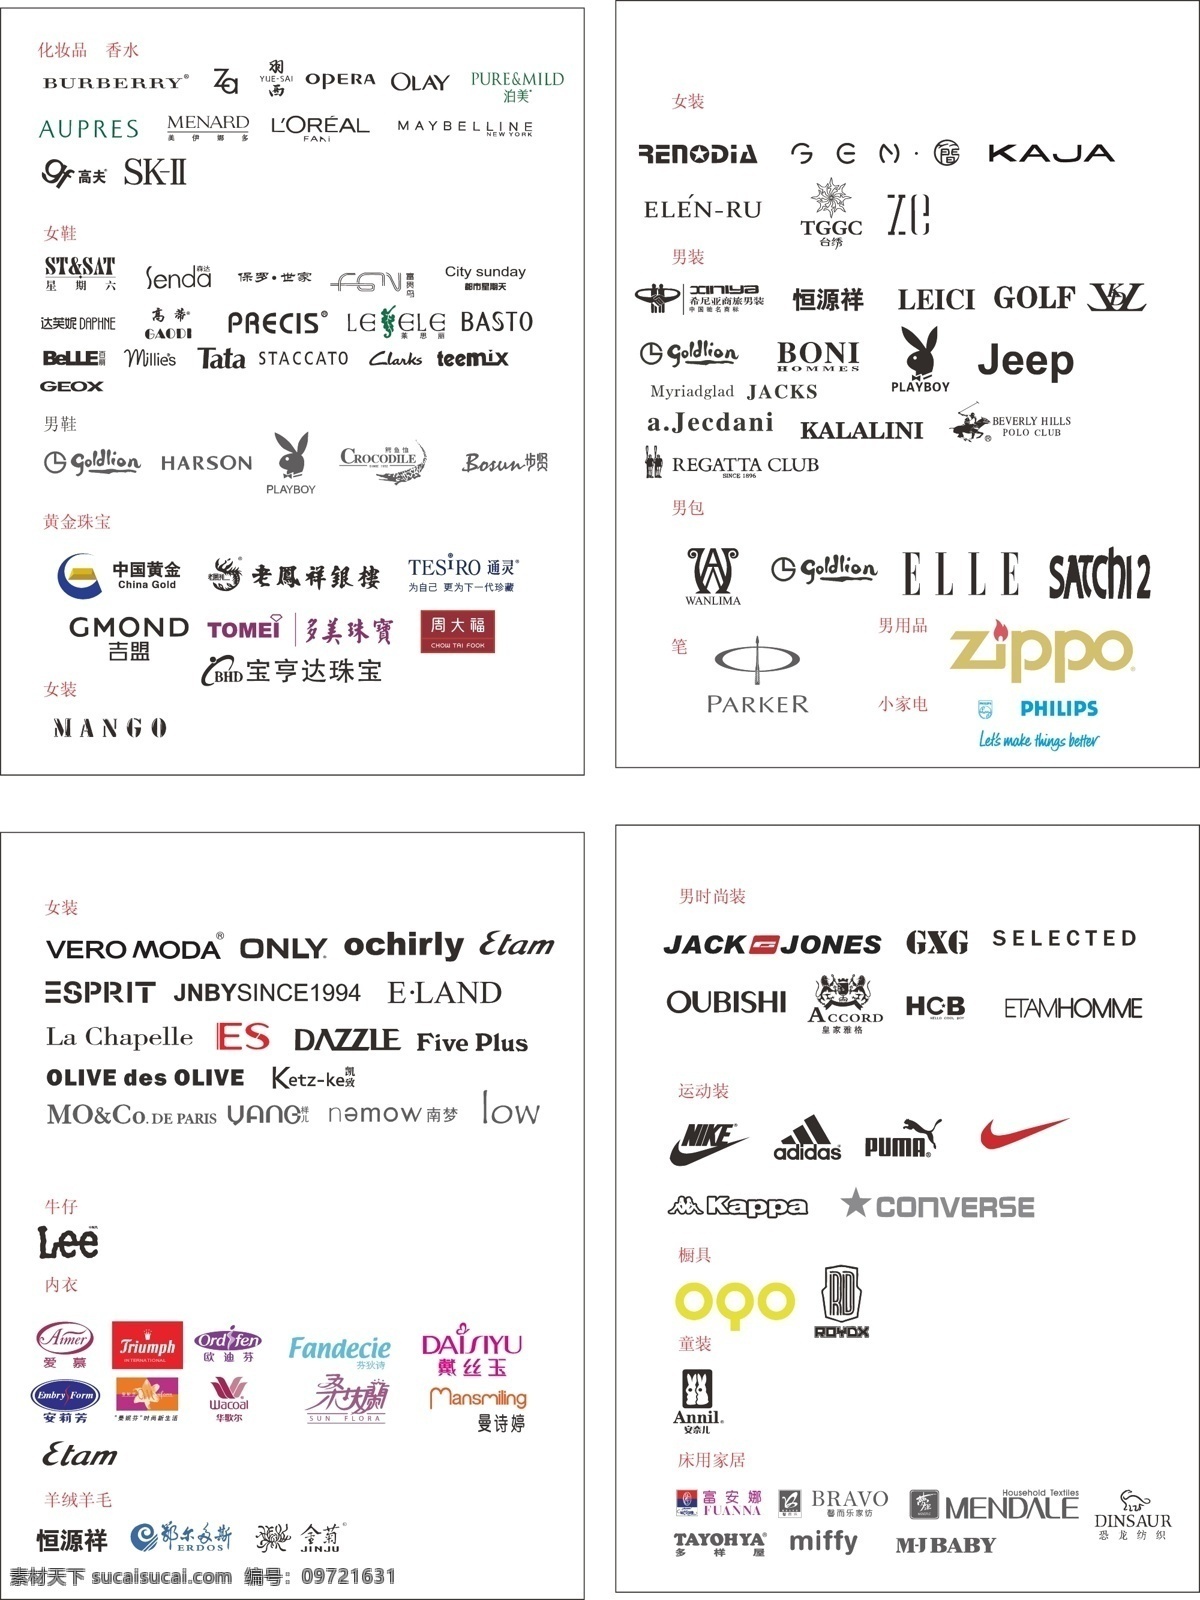 商场 品牌 logo 合集 男装 女装 运动休闲 内衣 化妆品 鞋 黄金珠宝 标识标志图标 矢量